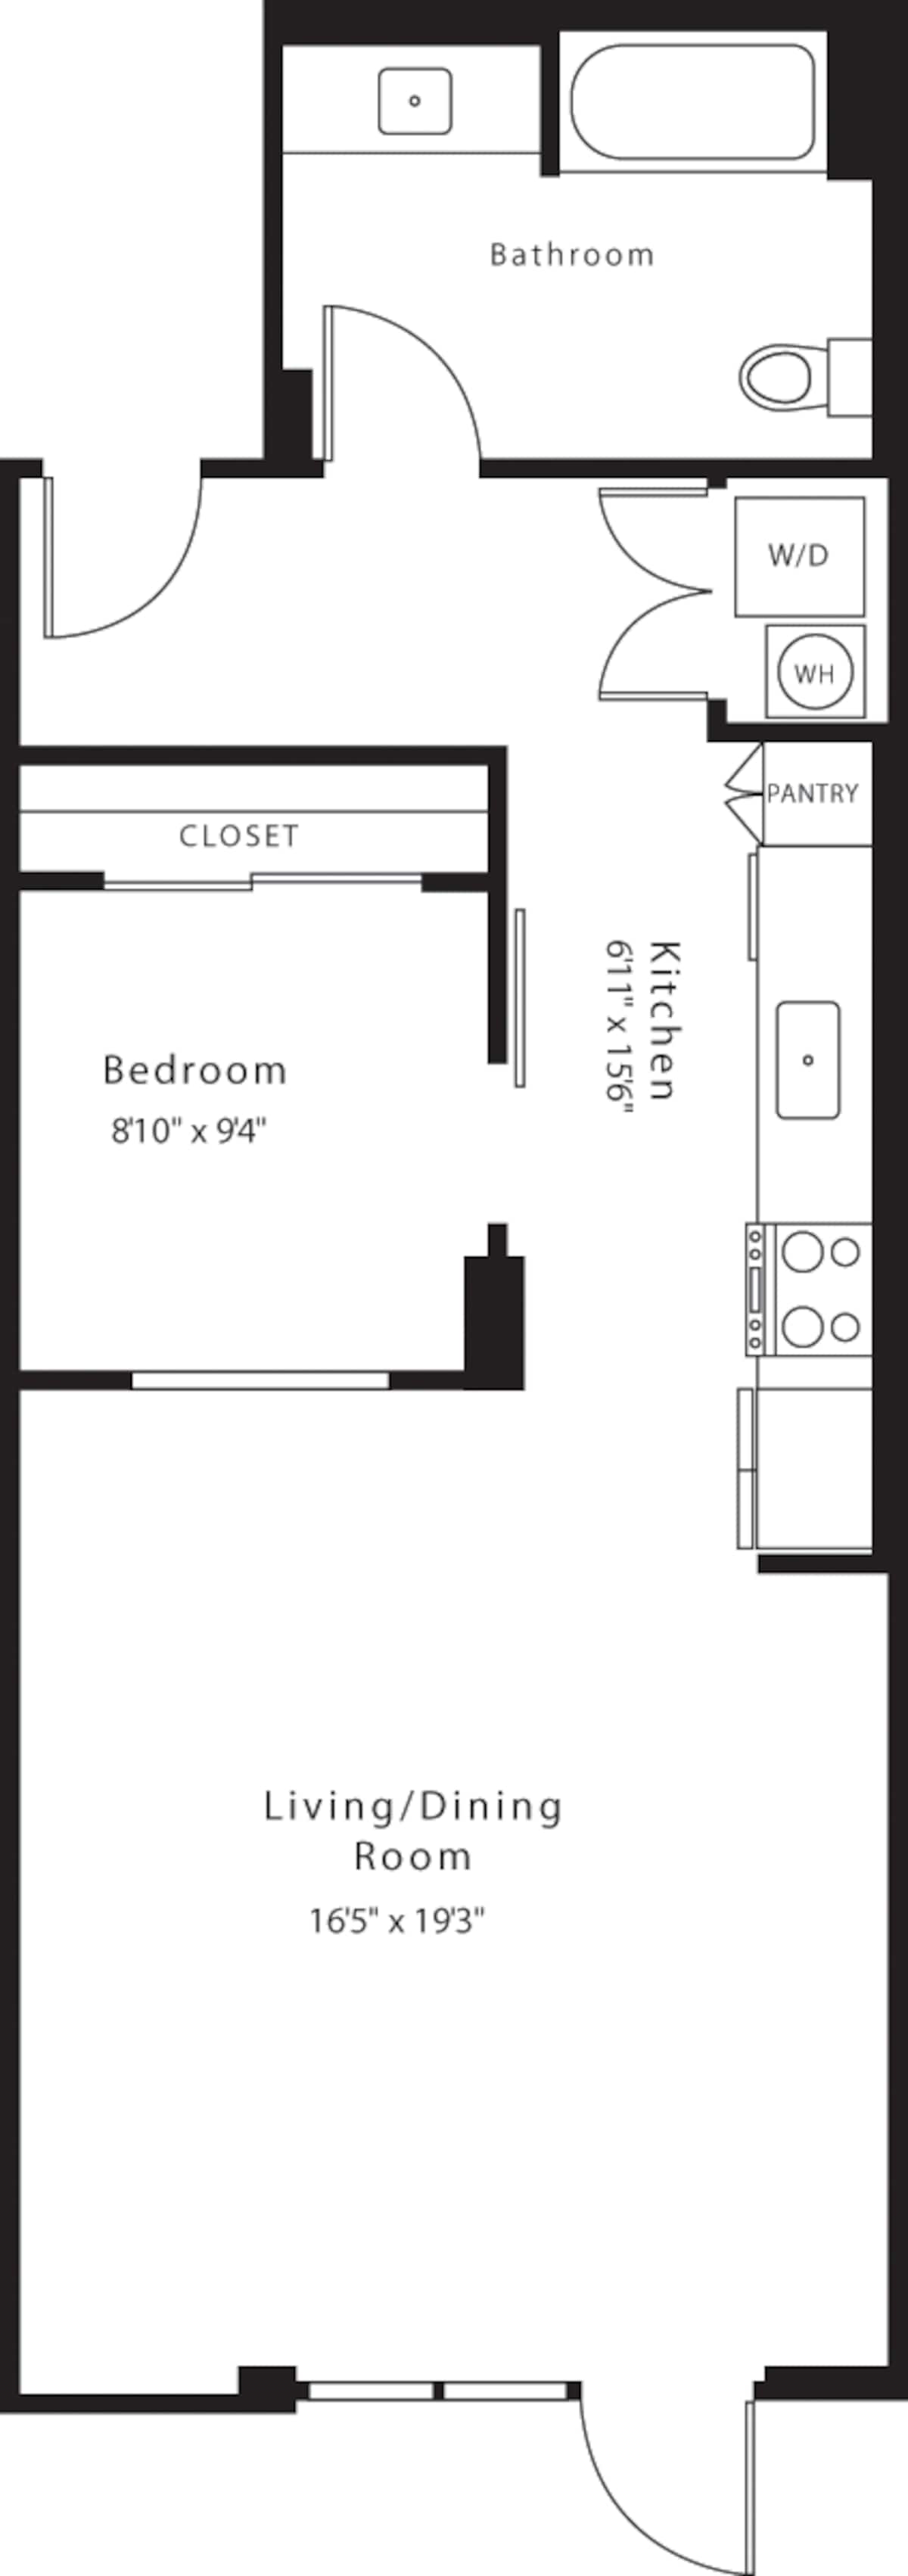 Floorplan diagram for LW2, showing 1 bedroom